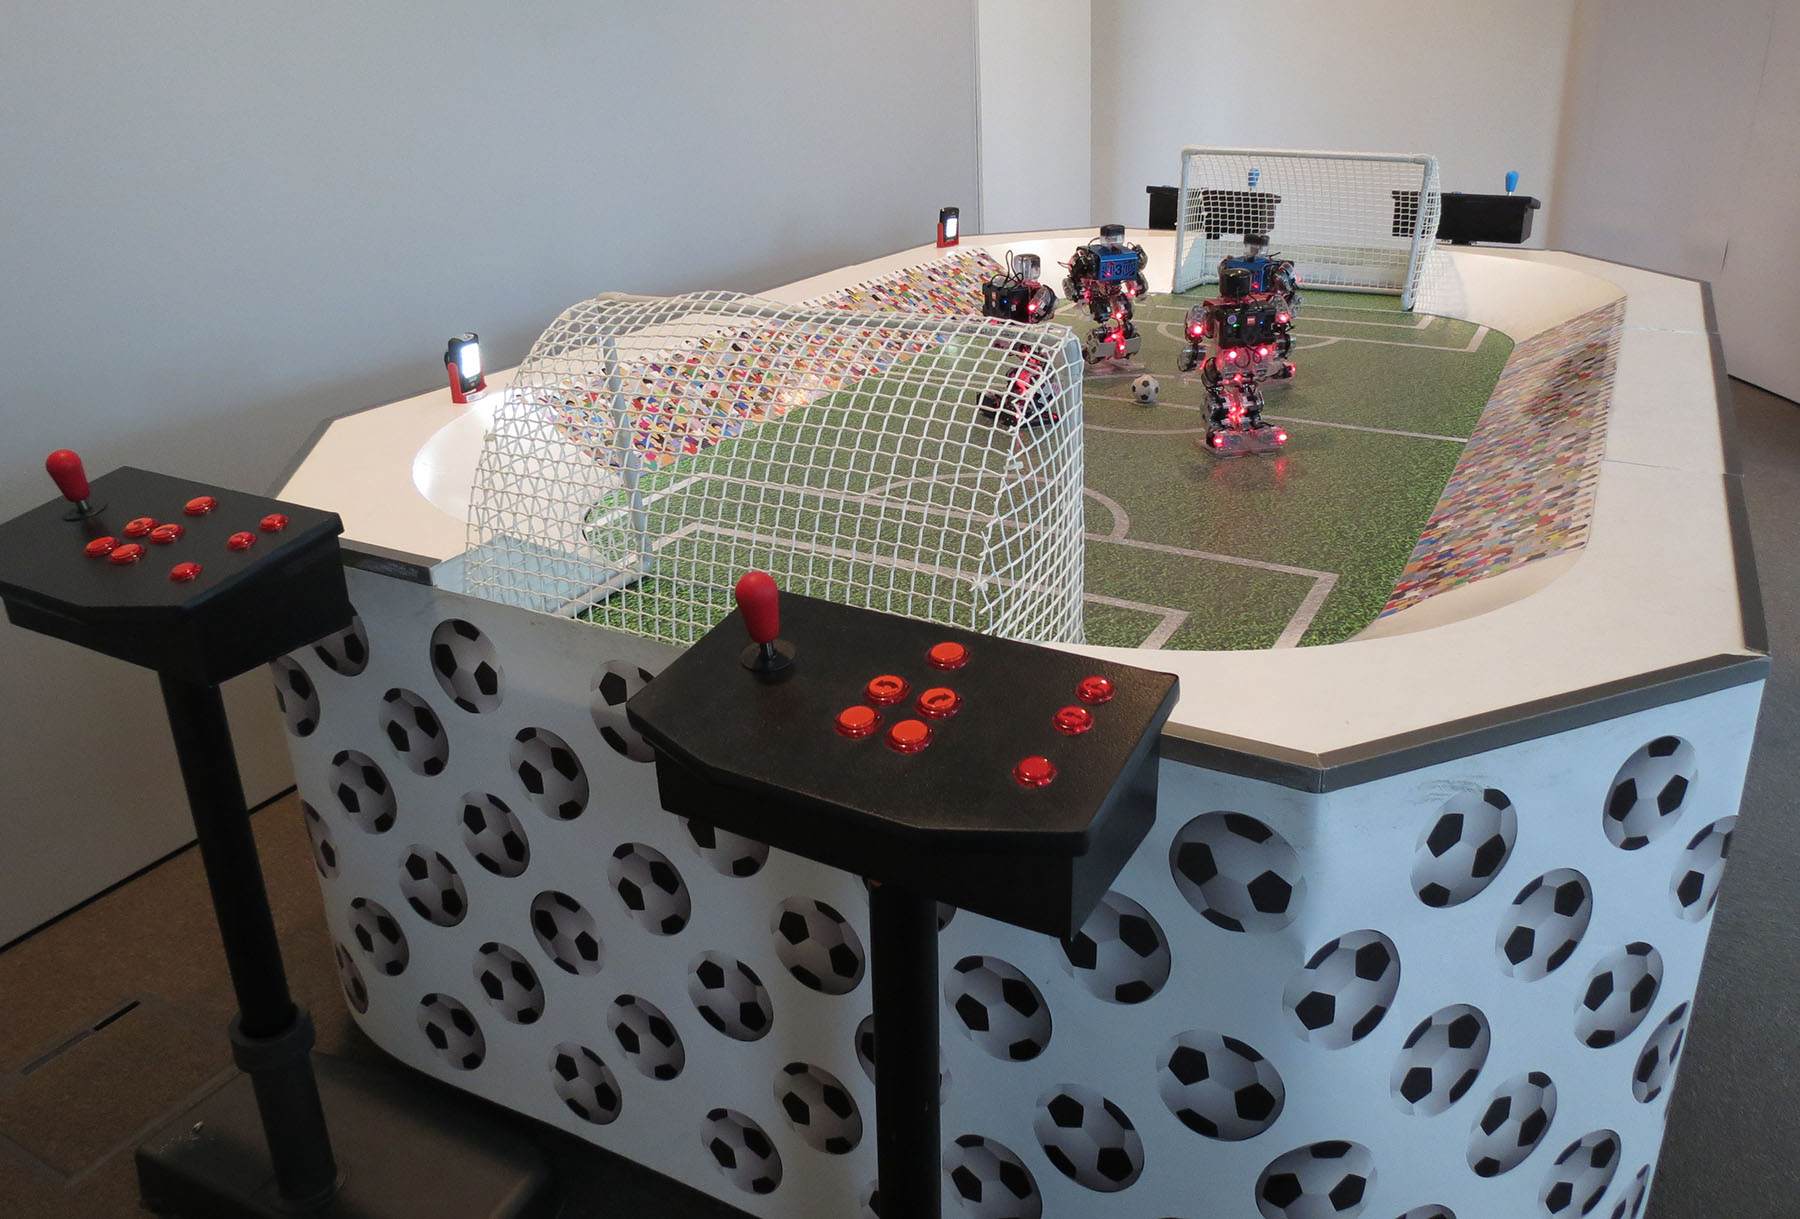 Vu des bornes de controle des robots footballeurs